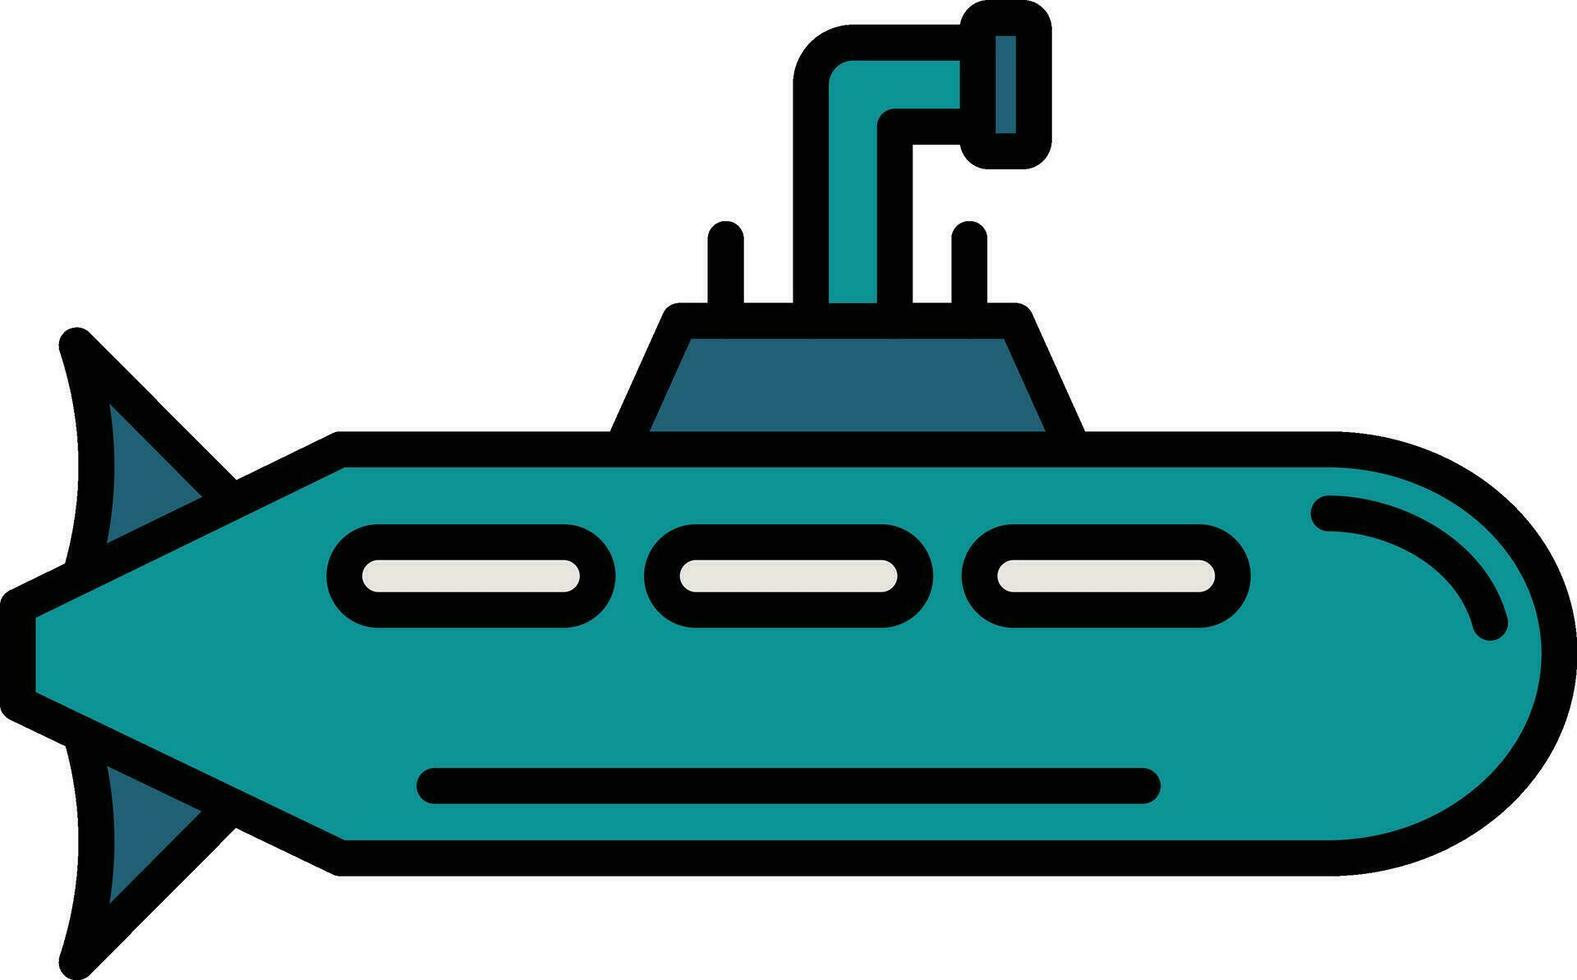 Army Submarine Vector Icon